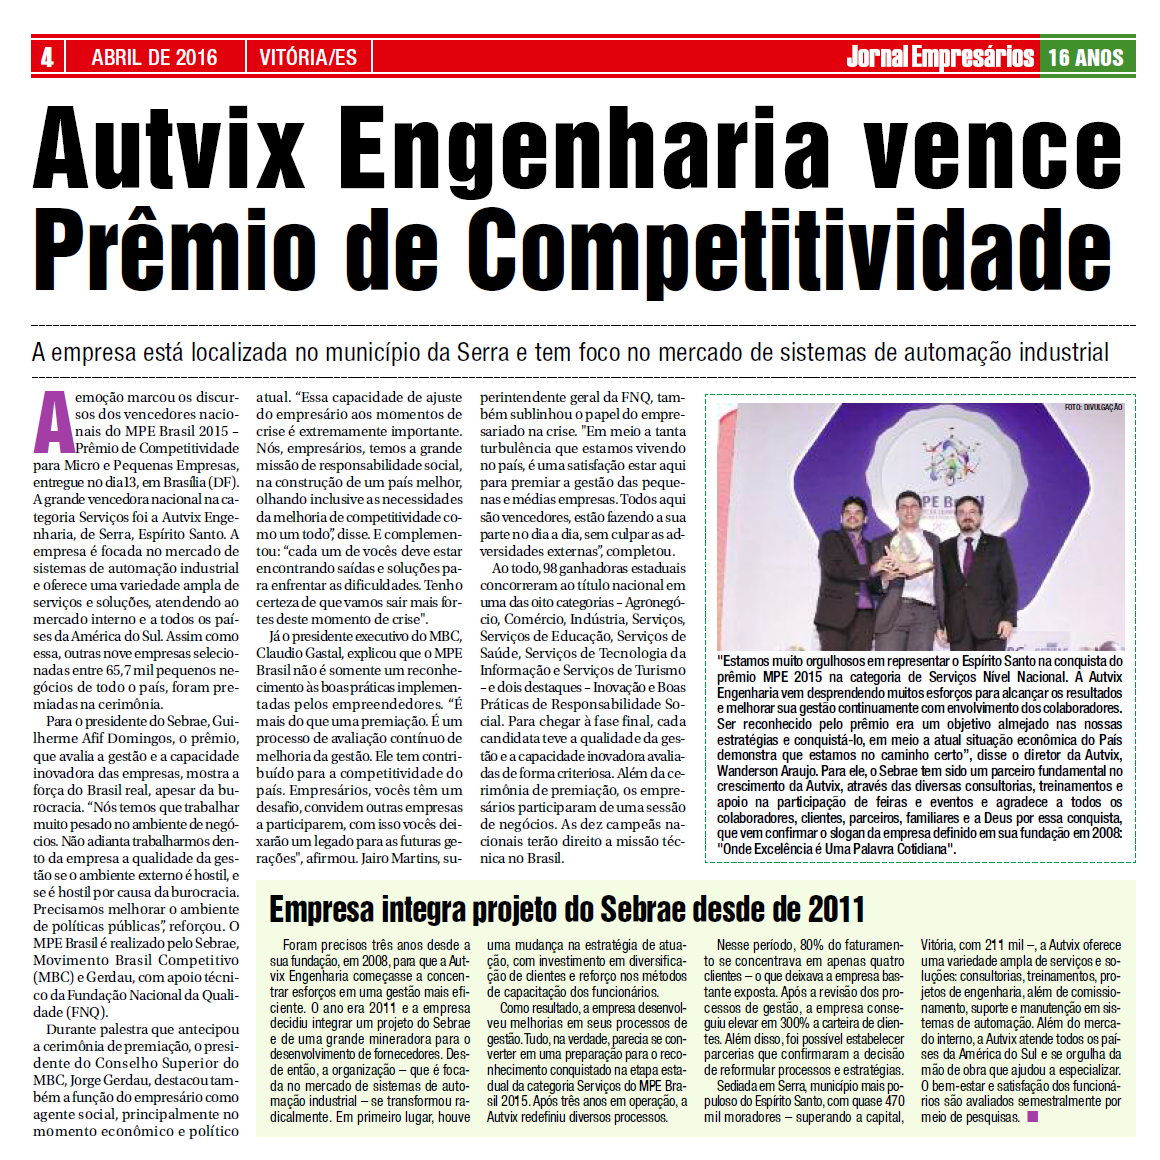 Autvix ganha Prêmio de Competitividade para Micro e Pequenas Empresas